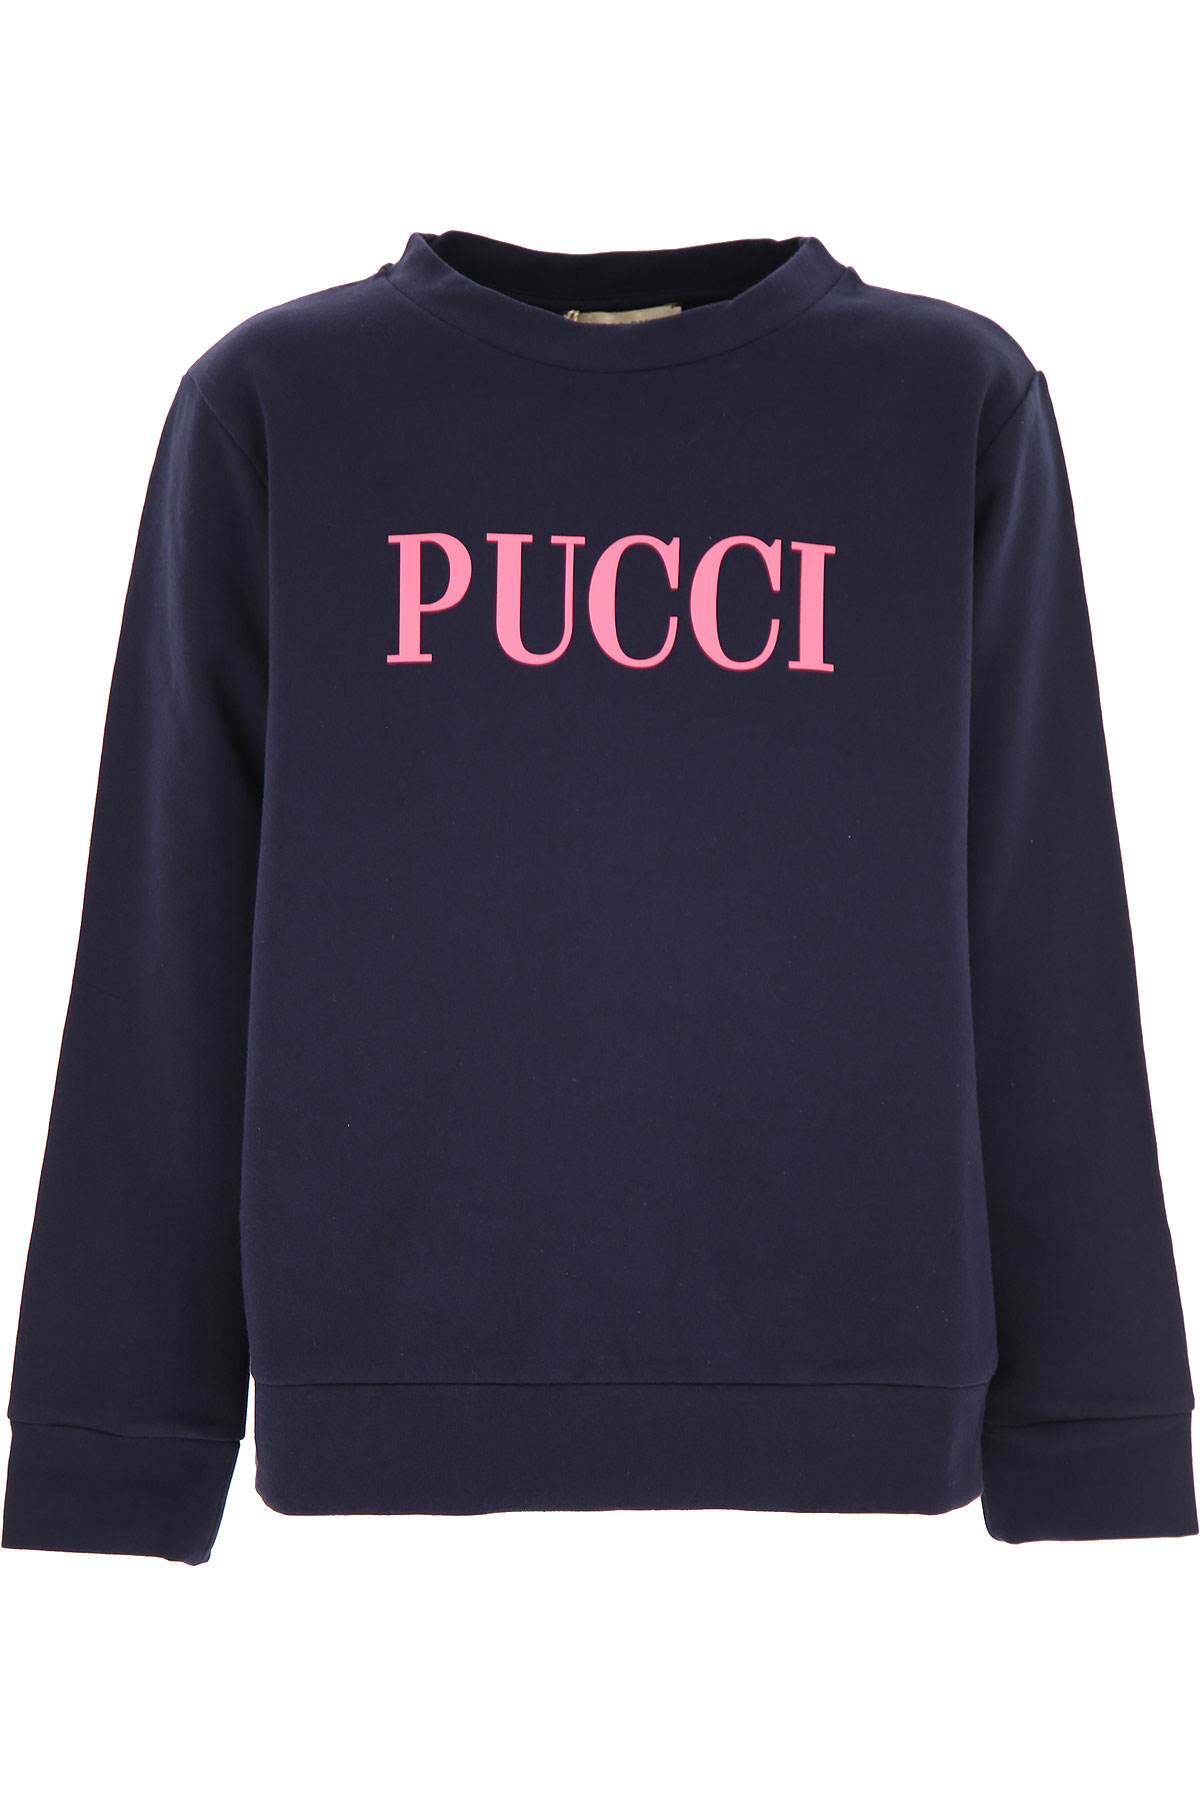 Emilio Pucci Kinder Sweatshirt & Kapuzenpullover für Mädchen Günstig im Sale, Blau, Baumwolle, 2017, 10Y 12Y 14Y 8Y